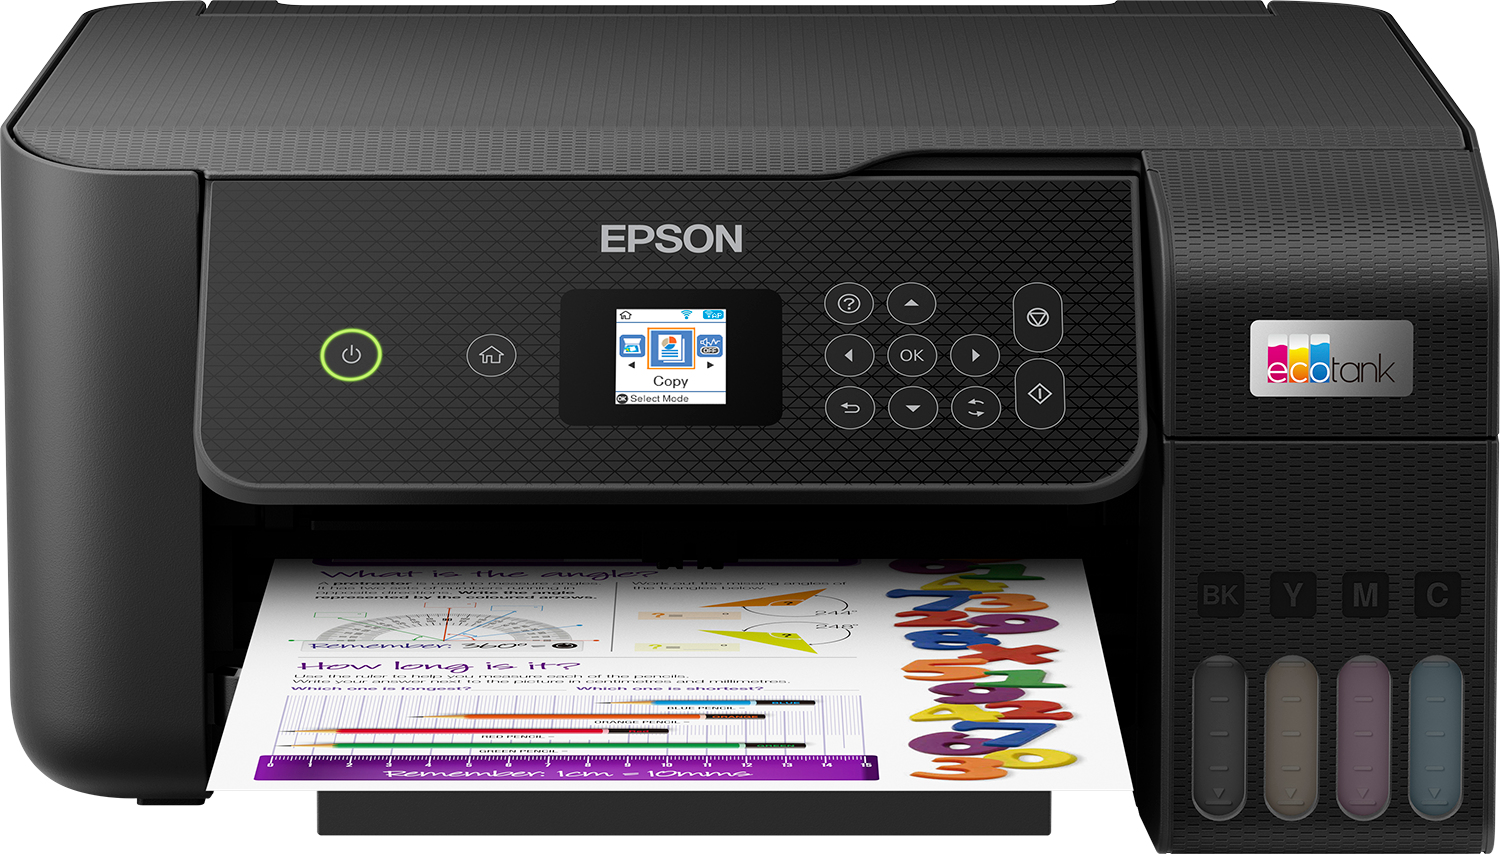 Printer Inkjet EPSON EcoTank ET-2821 AIOFlat Kleur A4